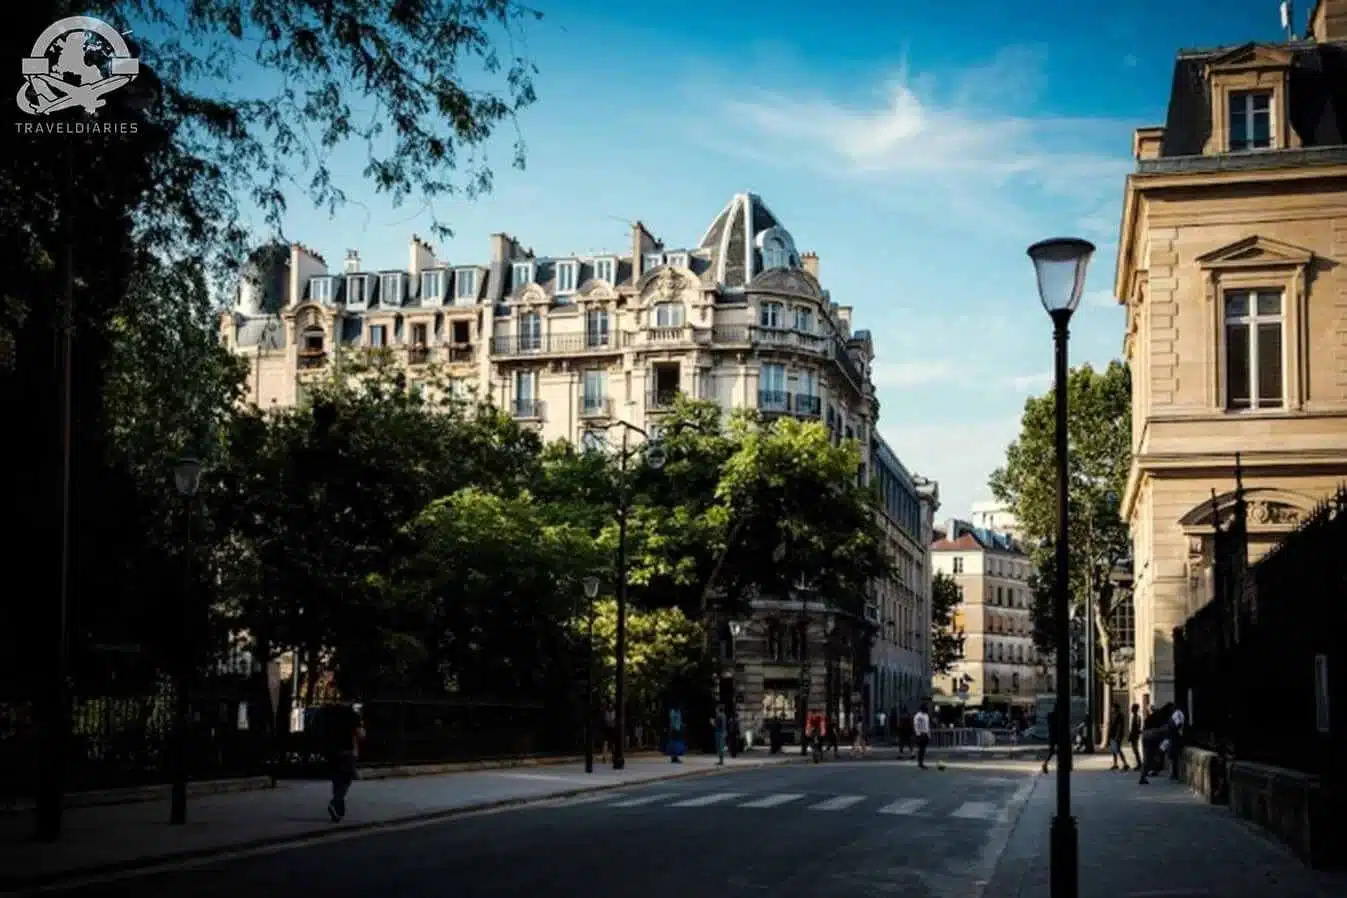 17. Grand Palais 8th arrondissement- Paris, France